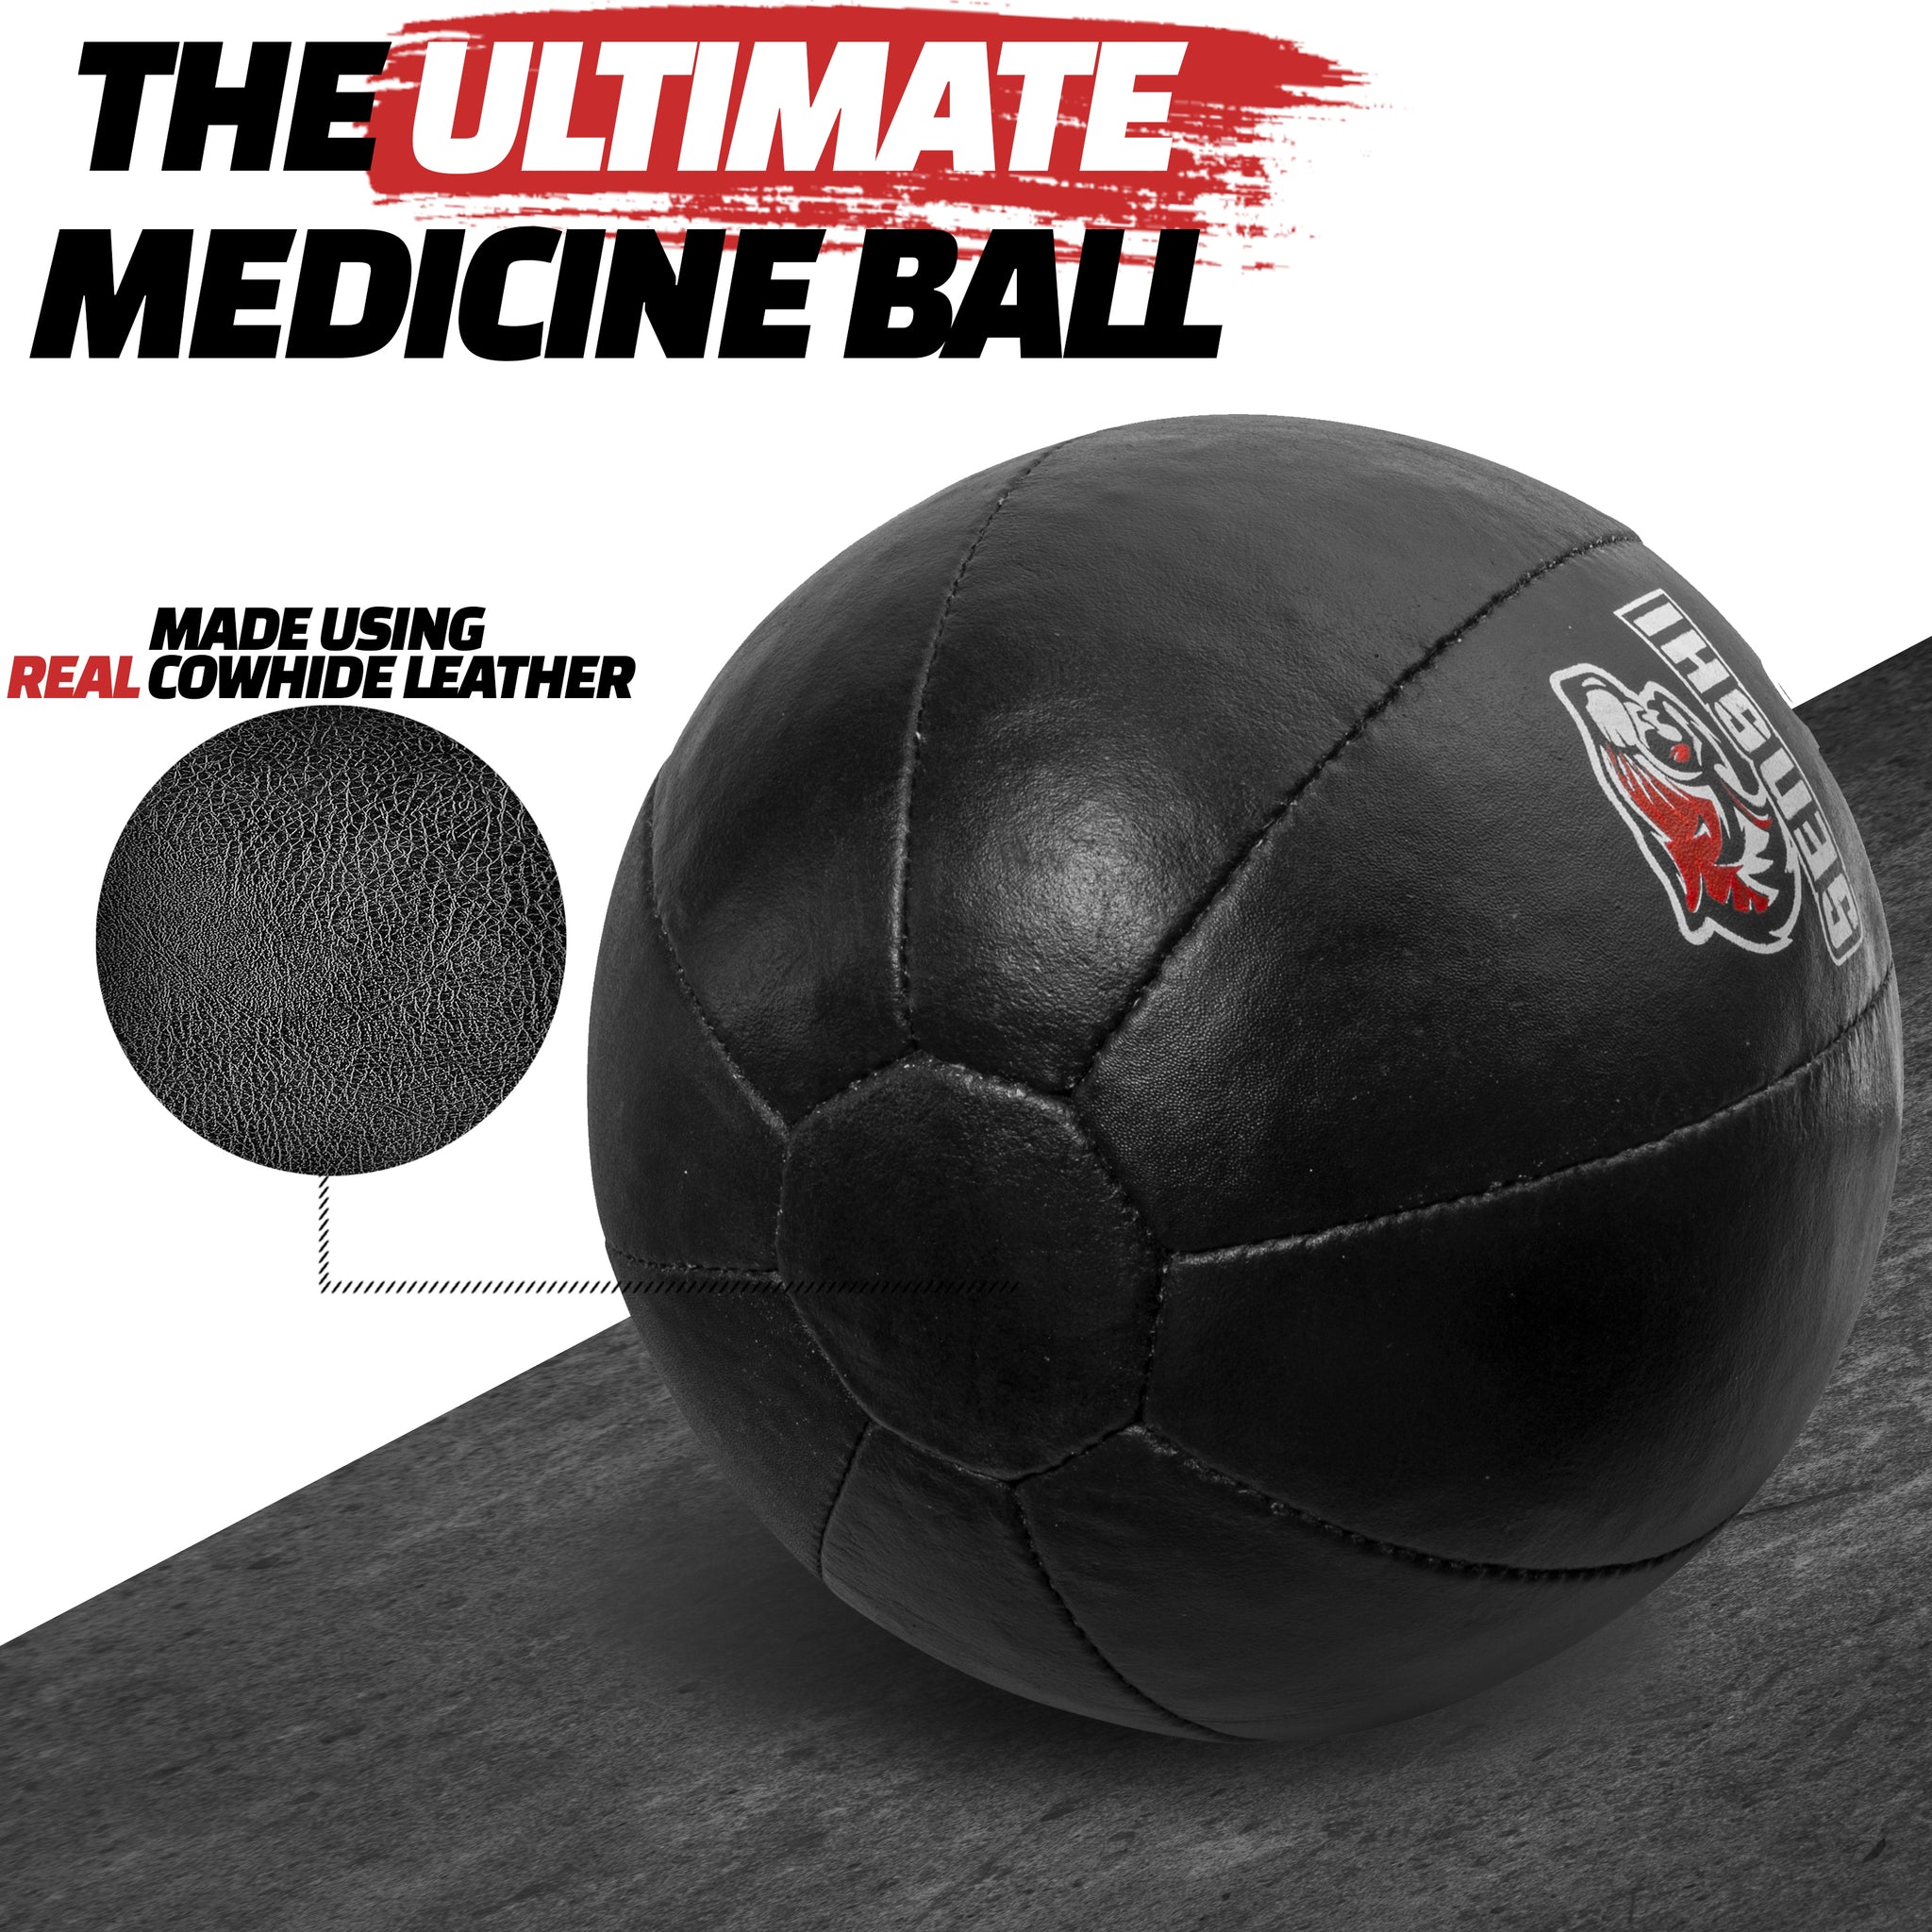 Palla medica da 10 kg, palla da parete ponderata in pelle per core, sport, allenamento